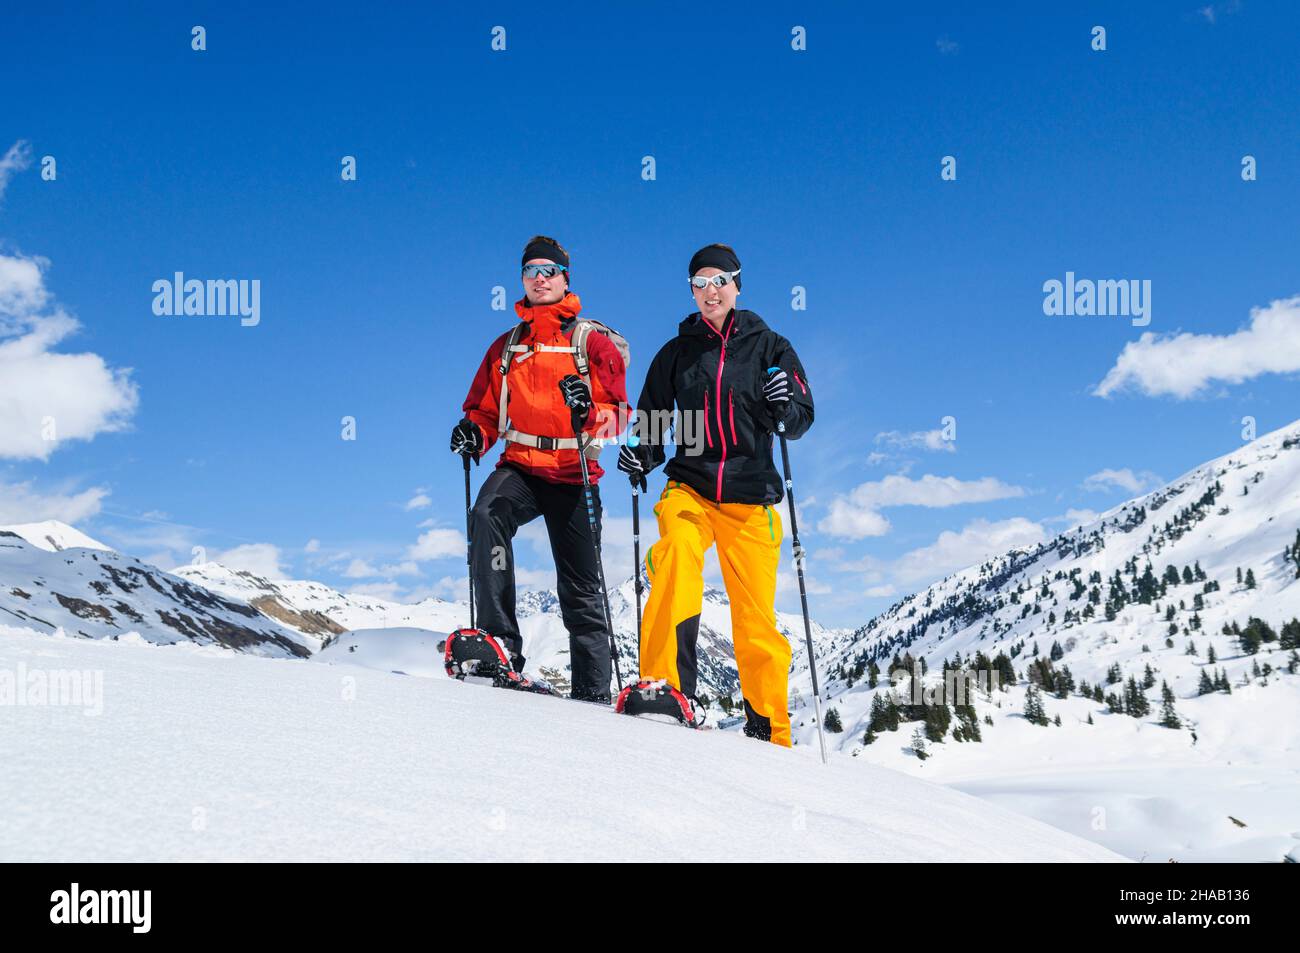 Zwei junge Leute unternehmen gemeinsam eine entspannte Tour auf Schneeschuhen nahe des Körbersees in VoraRelaxed tour with snowshoes in wintry nature Stock Photo